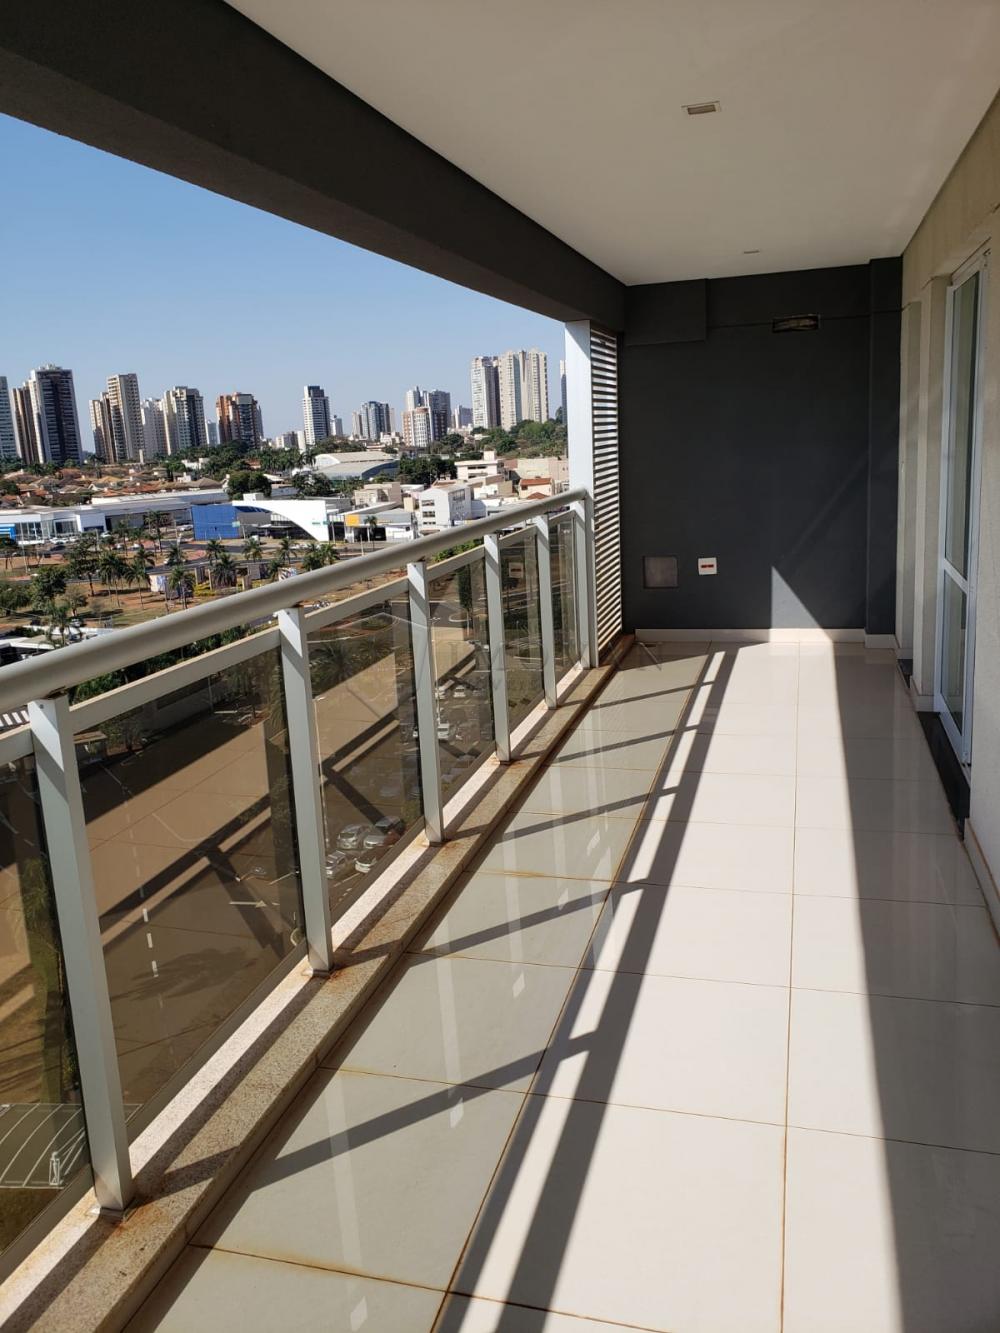 Comprar Apartamento / Padrão em Ribeirão Preto R$ 410.000,00 - Foto 8